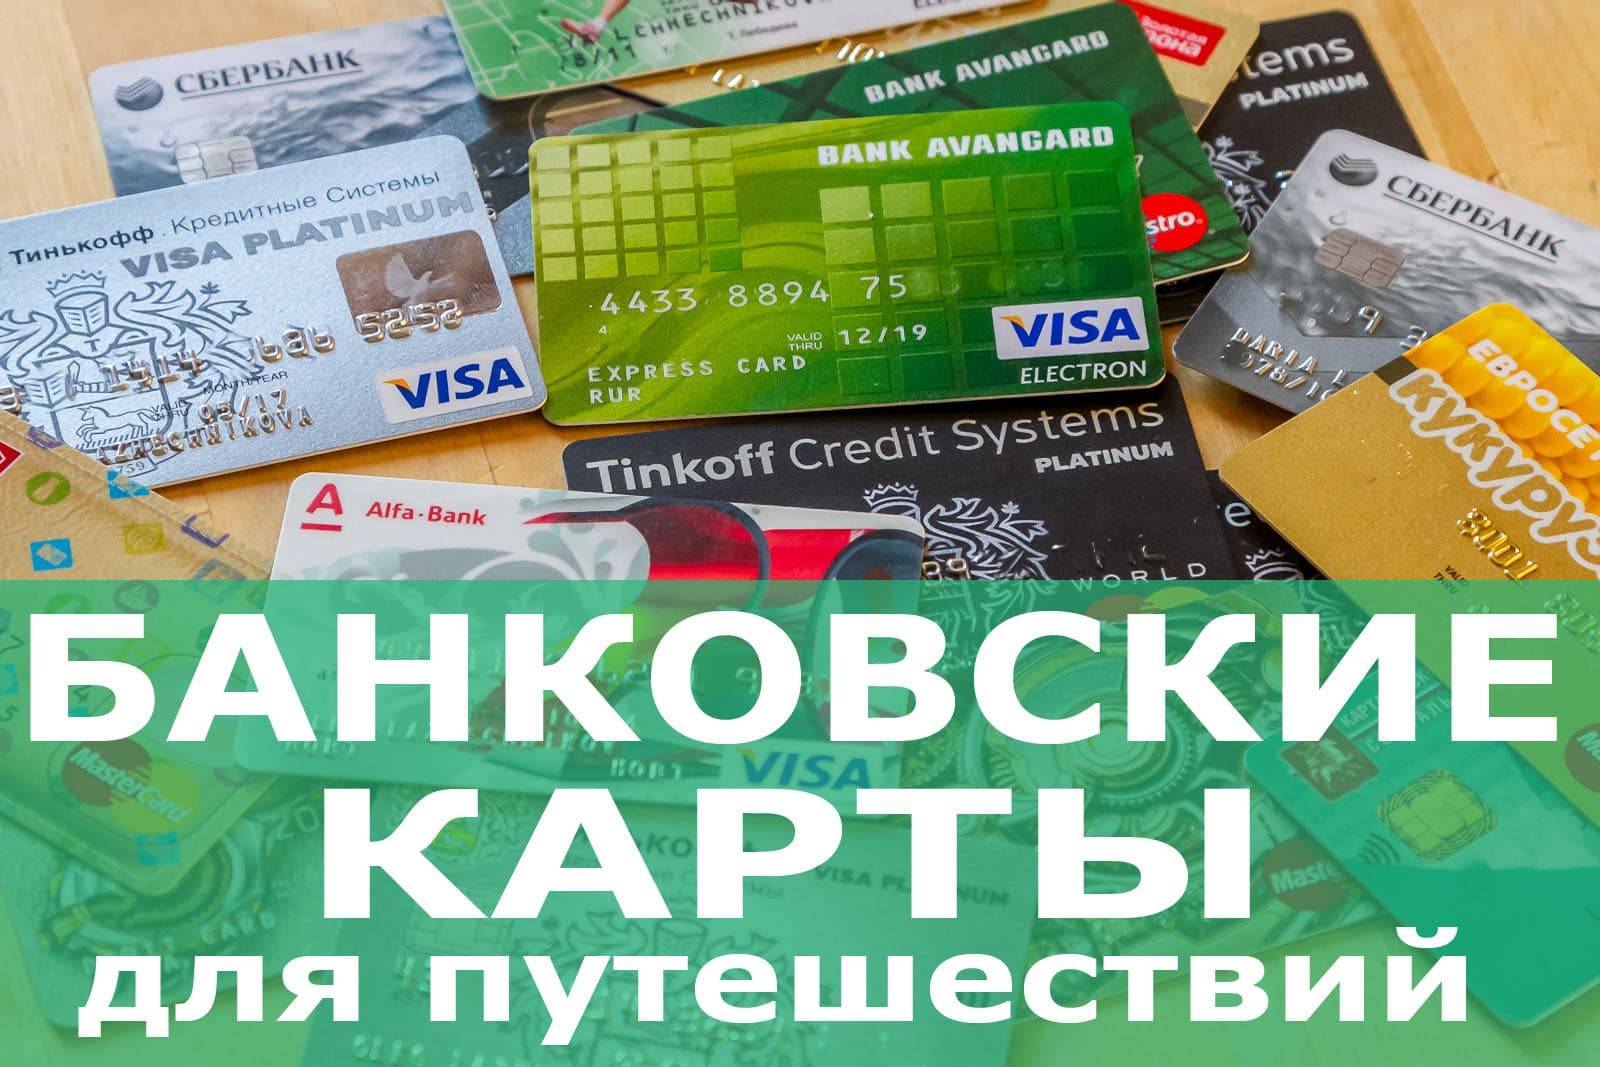 Кредитные карты для путешествий по европе - лучшие предложения банков на zaimite